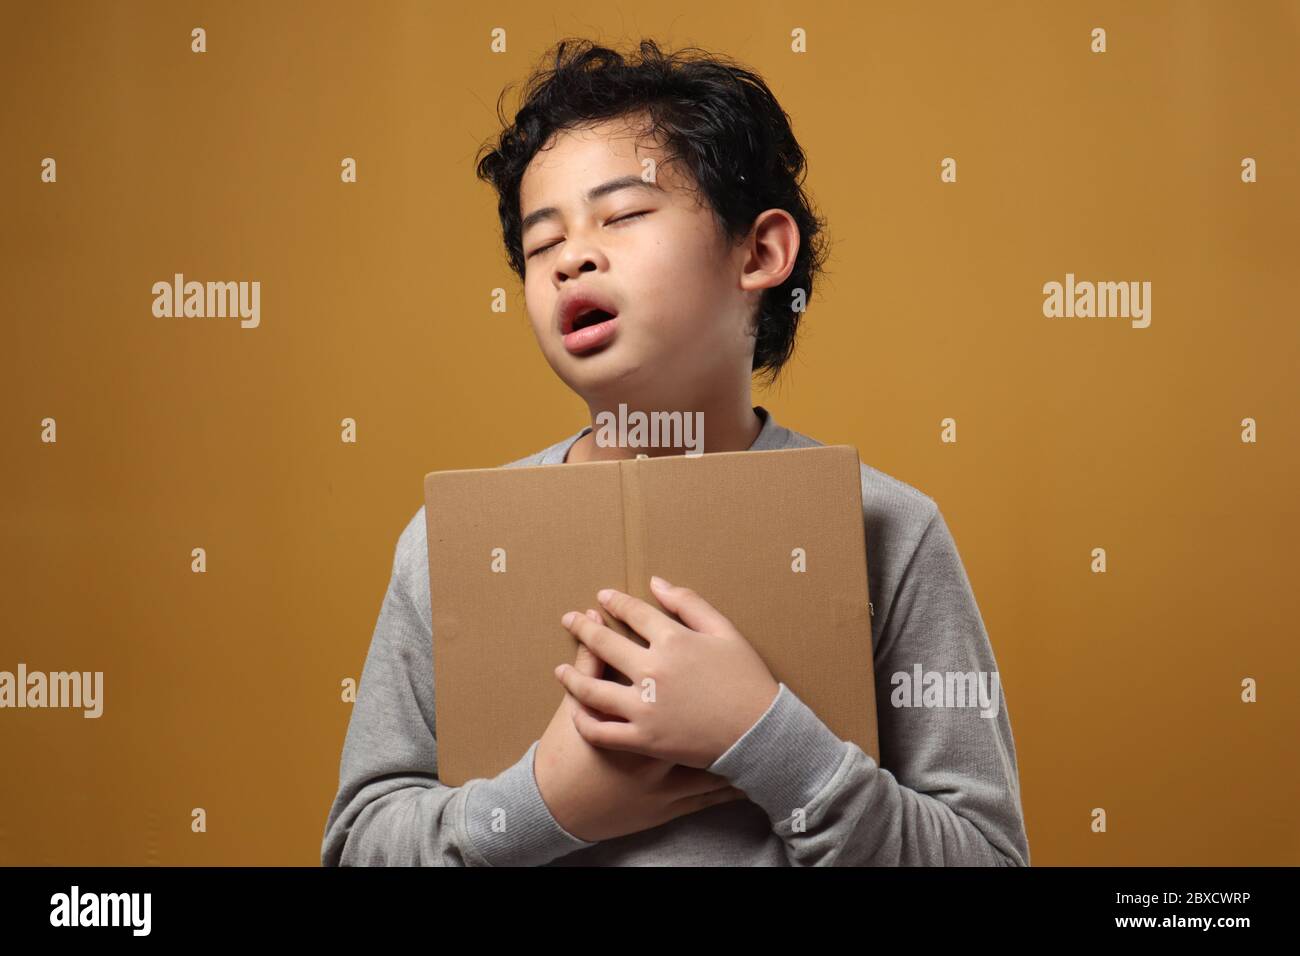 Ritratto di giovane studente asiatico ragazzo stanco dormì durante la lettura di un libro, studente stanco quando studiava duro, su sfondo giallo Foto Stock